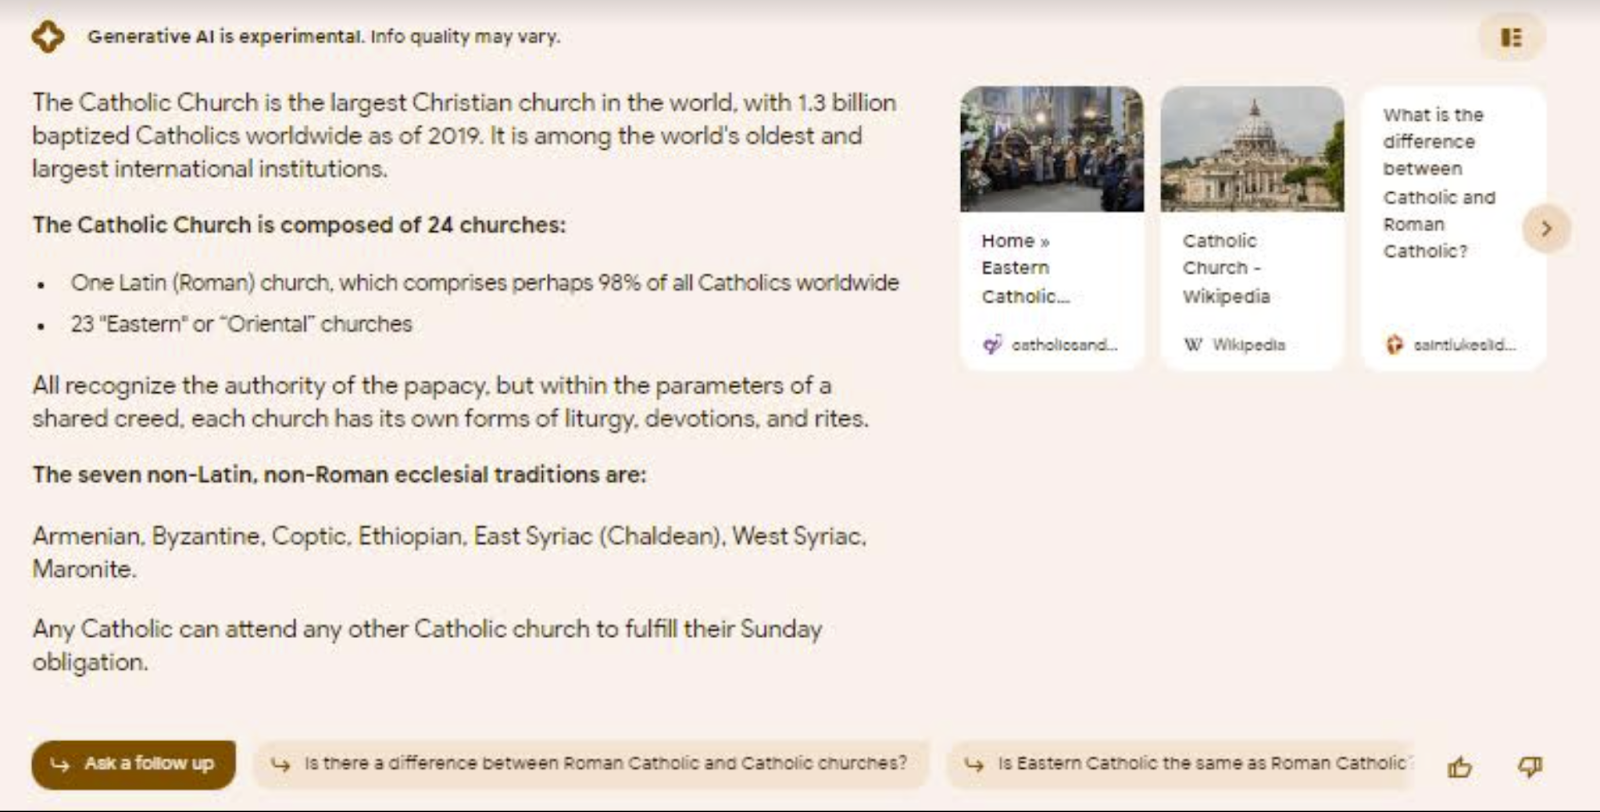 Kết quả SGE hiển thị nhiều thông tin chung chung về nhà thờ Công giáo cùng với một băng chuyền liên kết để biết thêm thông tin và các nút nhắc người dùng đặt thêm câu hỏi